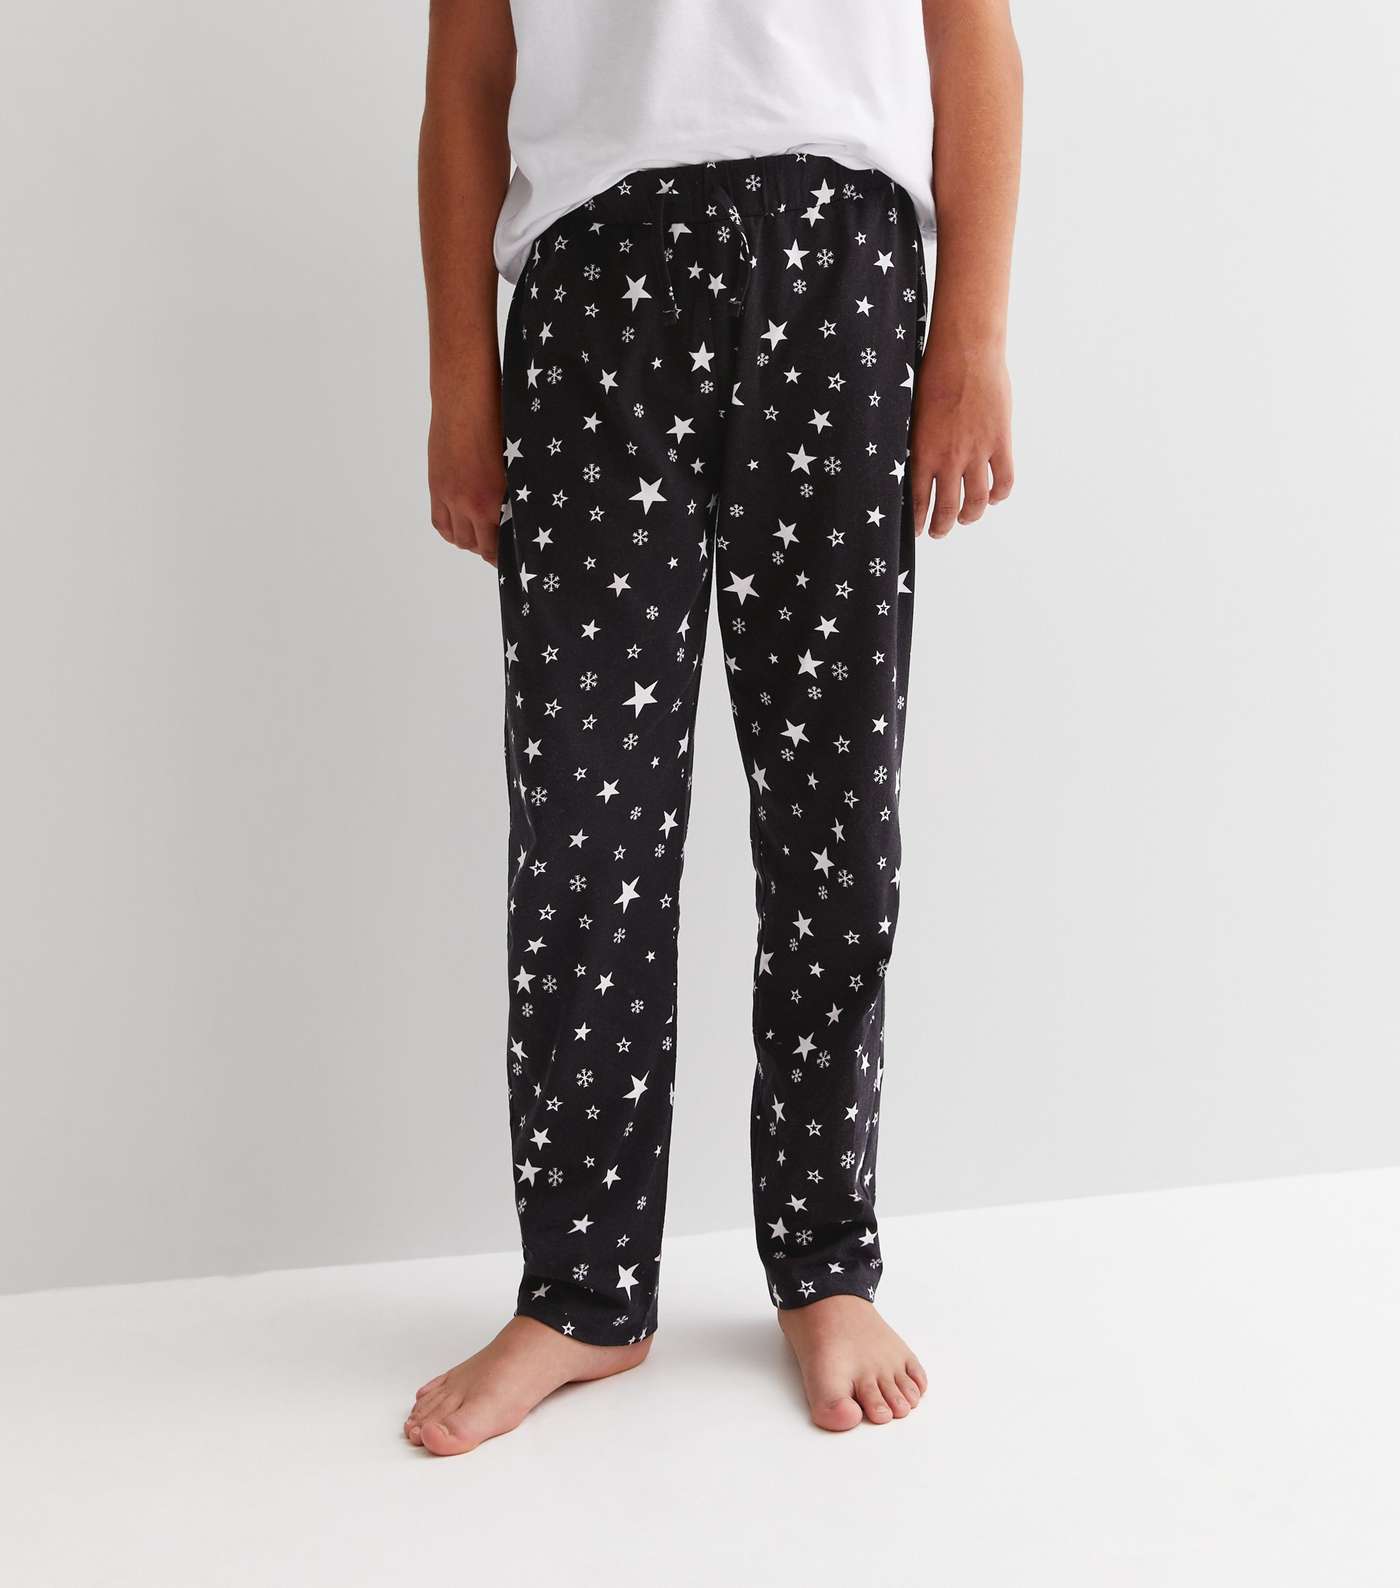 Boys Black Family Christmas Jogger Pyjama Set with Star Print Image 4